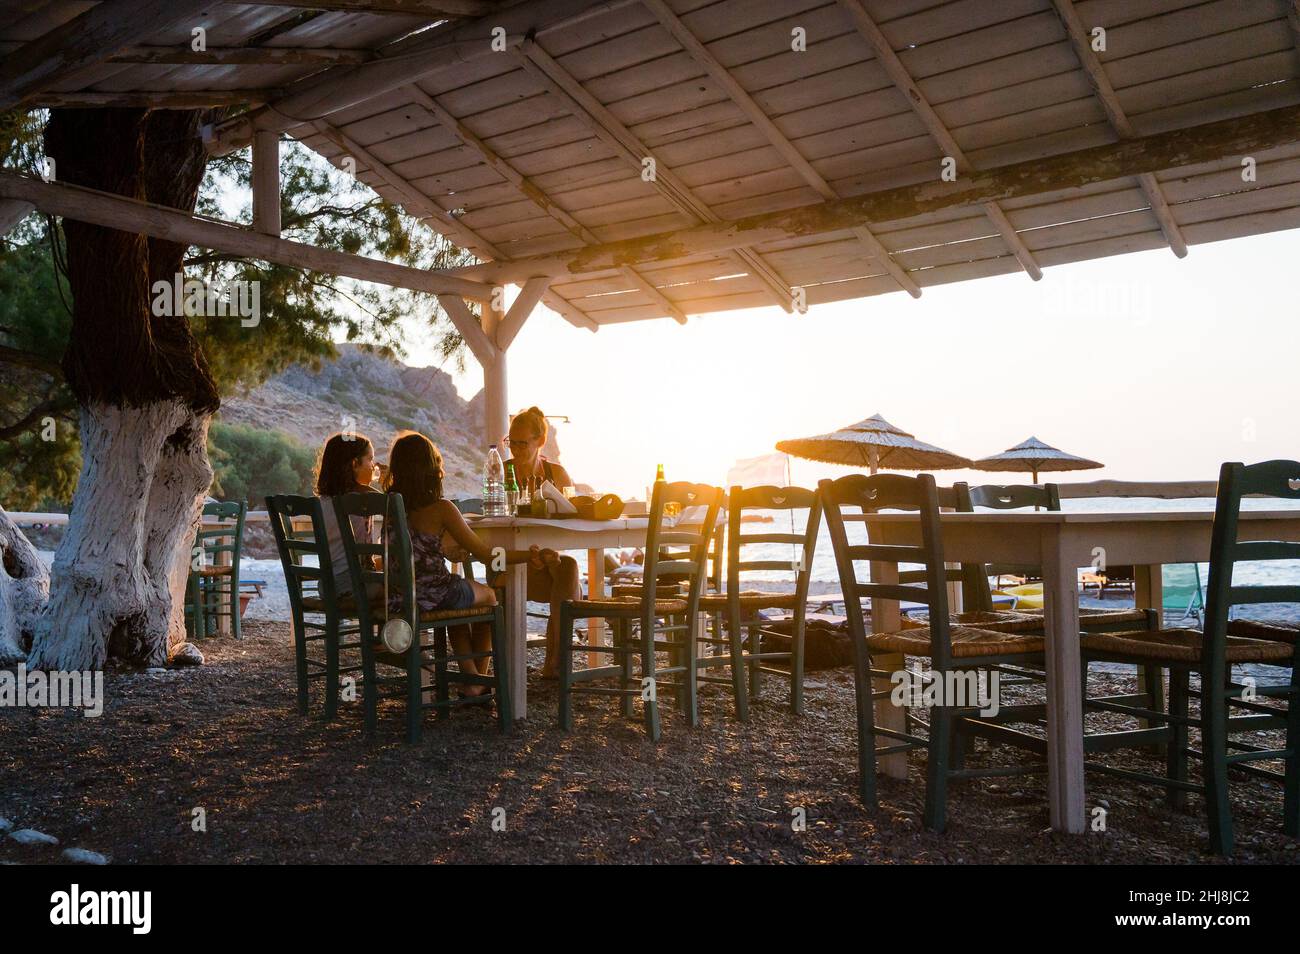 En famille, vous dînerez dans un restaurant sur la plage au coucher du soleil.Personnes dans un café sur une belle taverne de plage avec vue sur le coucher du soleil sur la plage Sfinari en C Banque D'Images